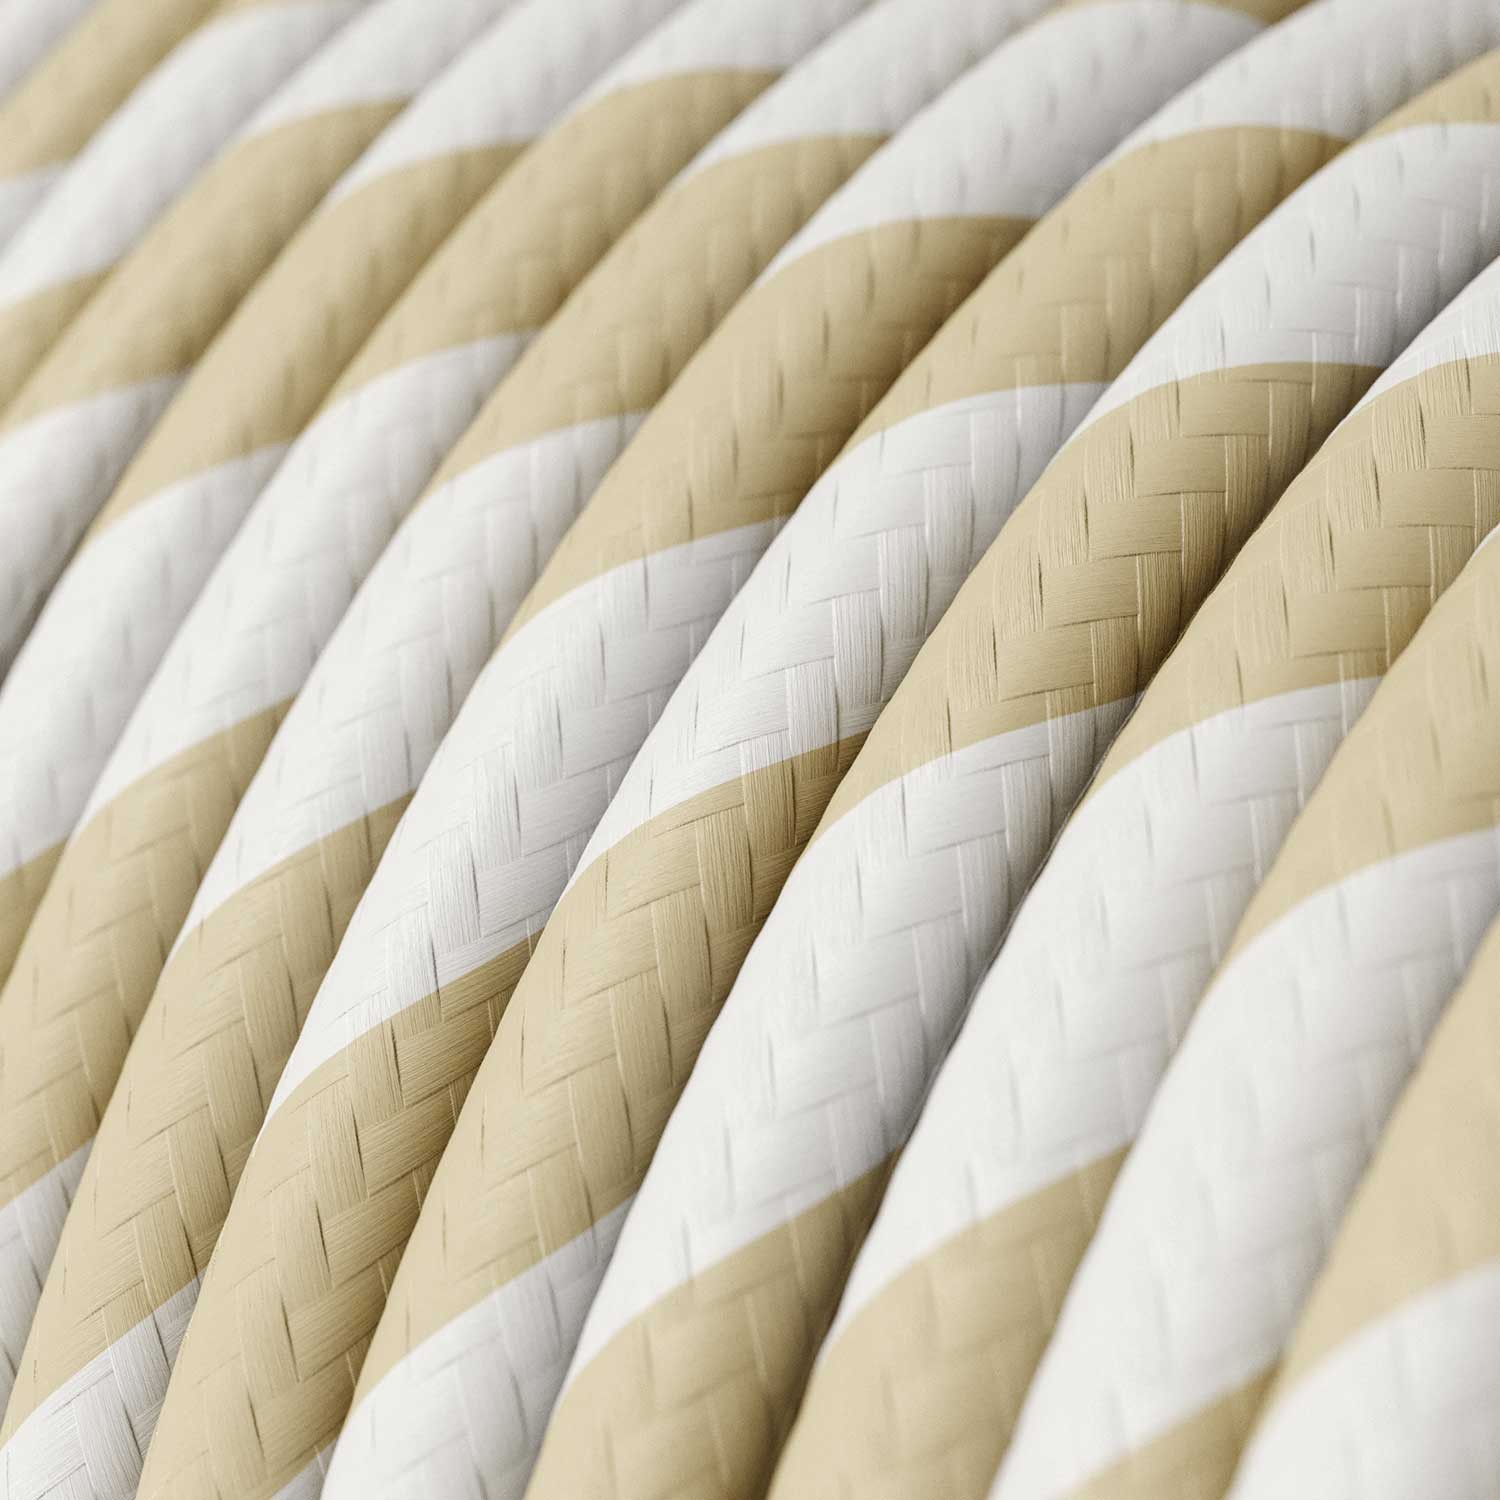 Textilkabel, cremefarben-nuss breit gestreift Vertigo - Das Original von Creative-Cables - ERM56 rund 2x0,75mm / 3x0,75mm